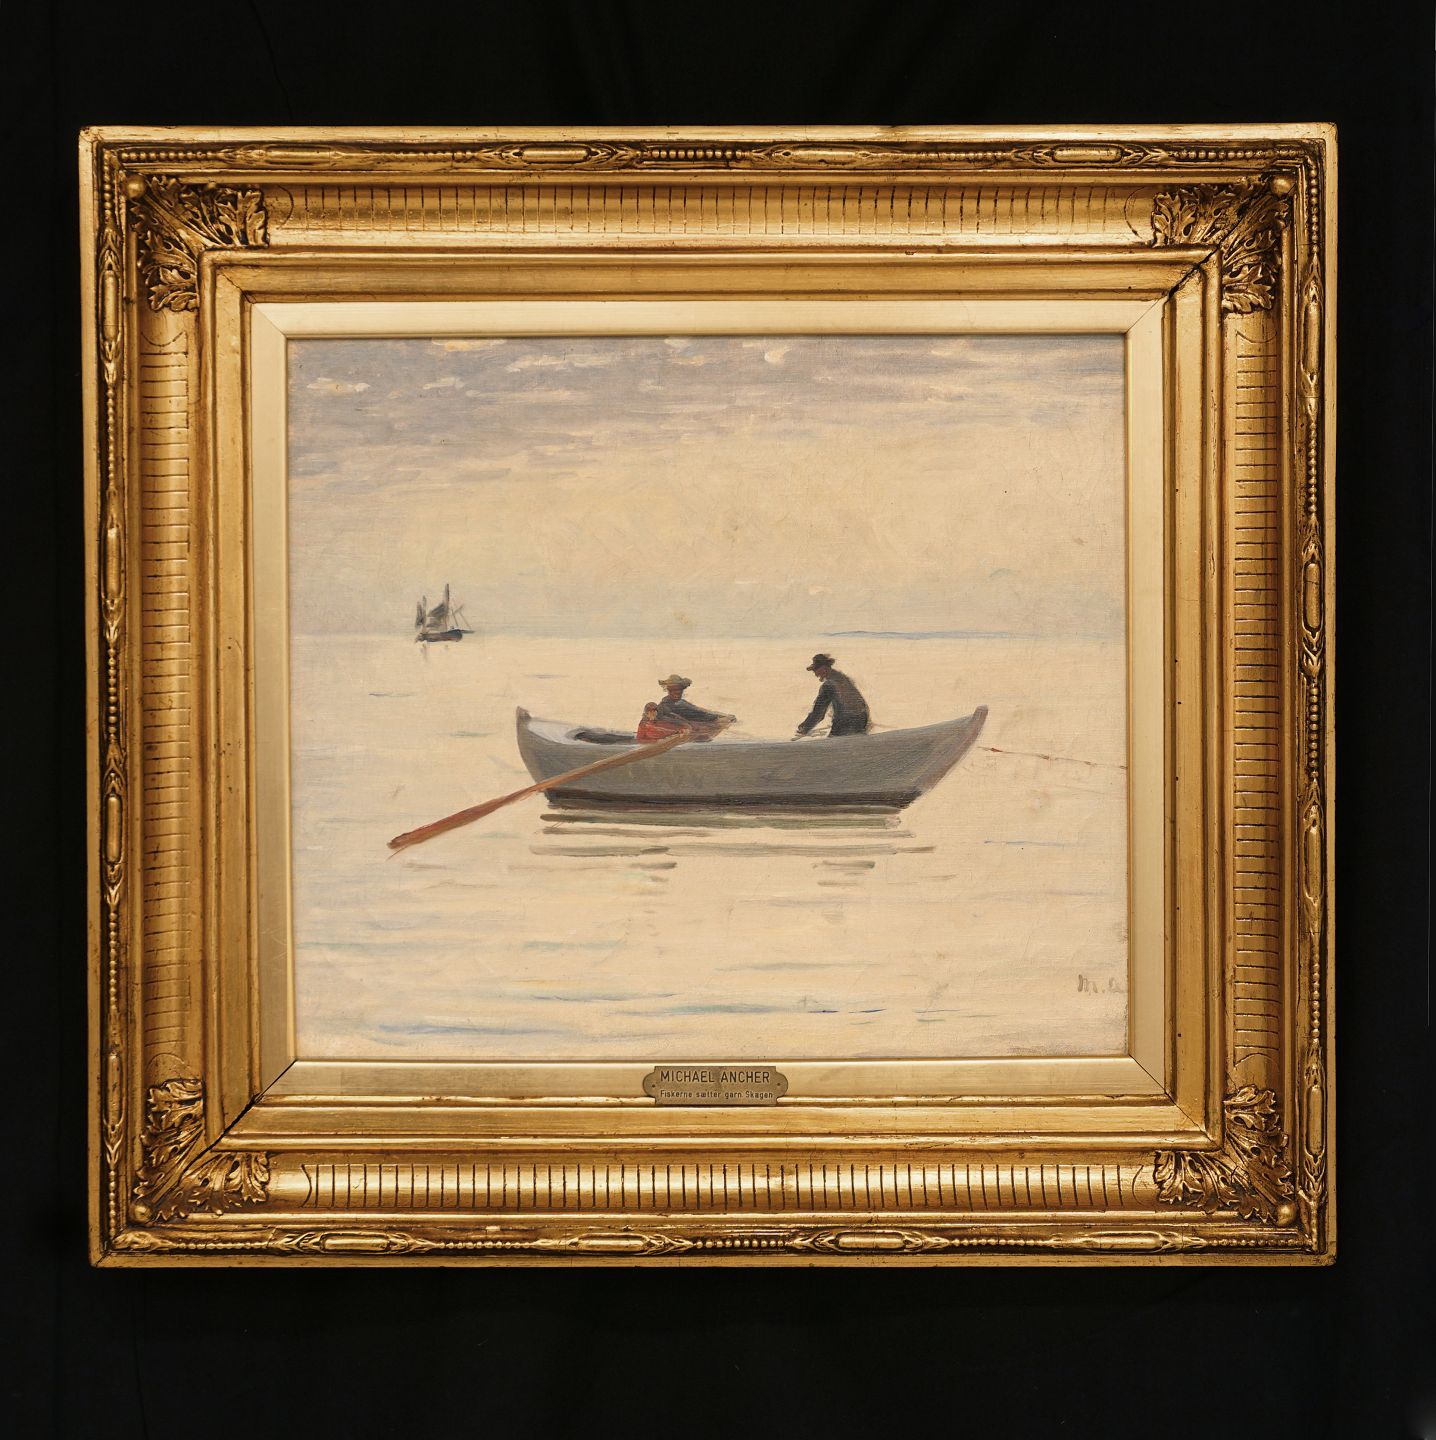 Tak for din hjælp undulate aflevere Aabenraa Antikvitetshandel * Michael Ancher, 1849-1927: "Fiskerne sætter  garn. Skagen". Olie på lærred. Signe